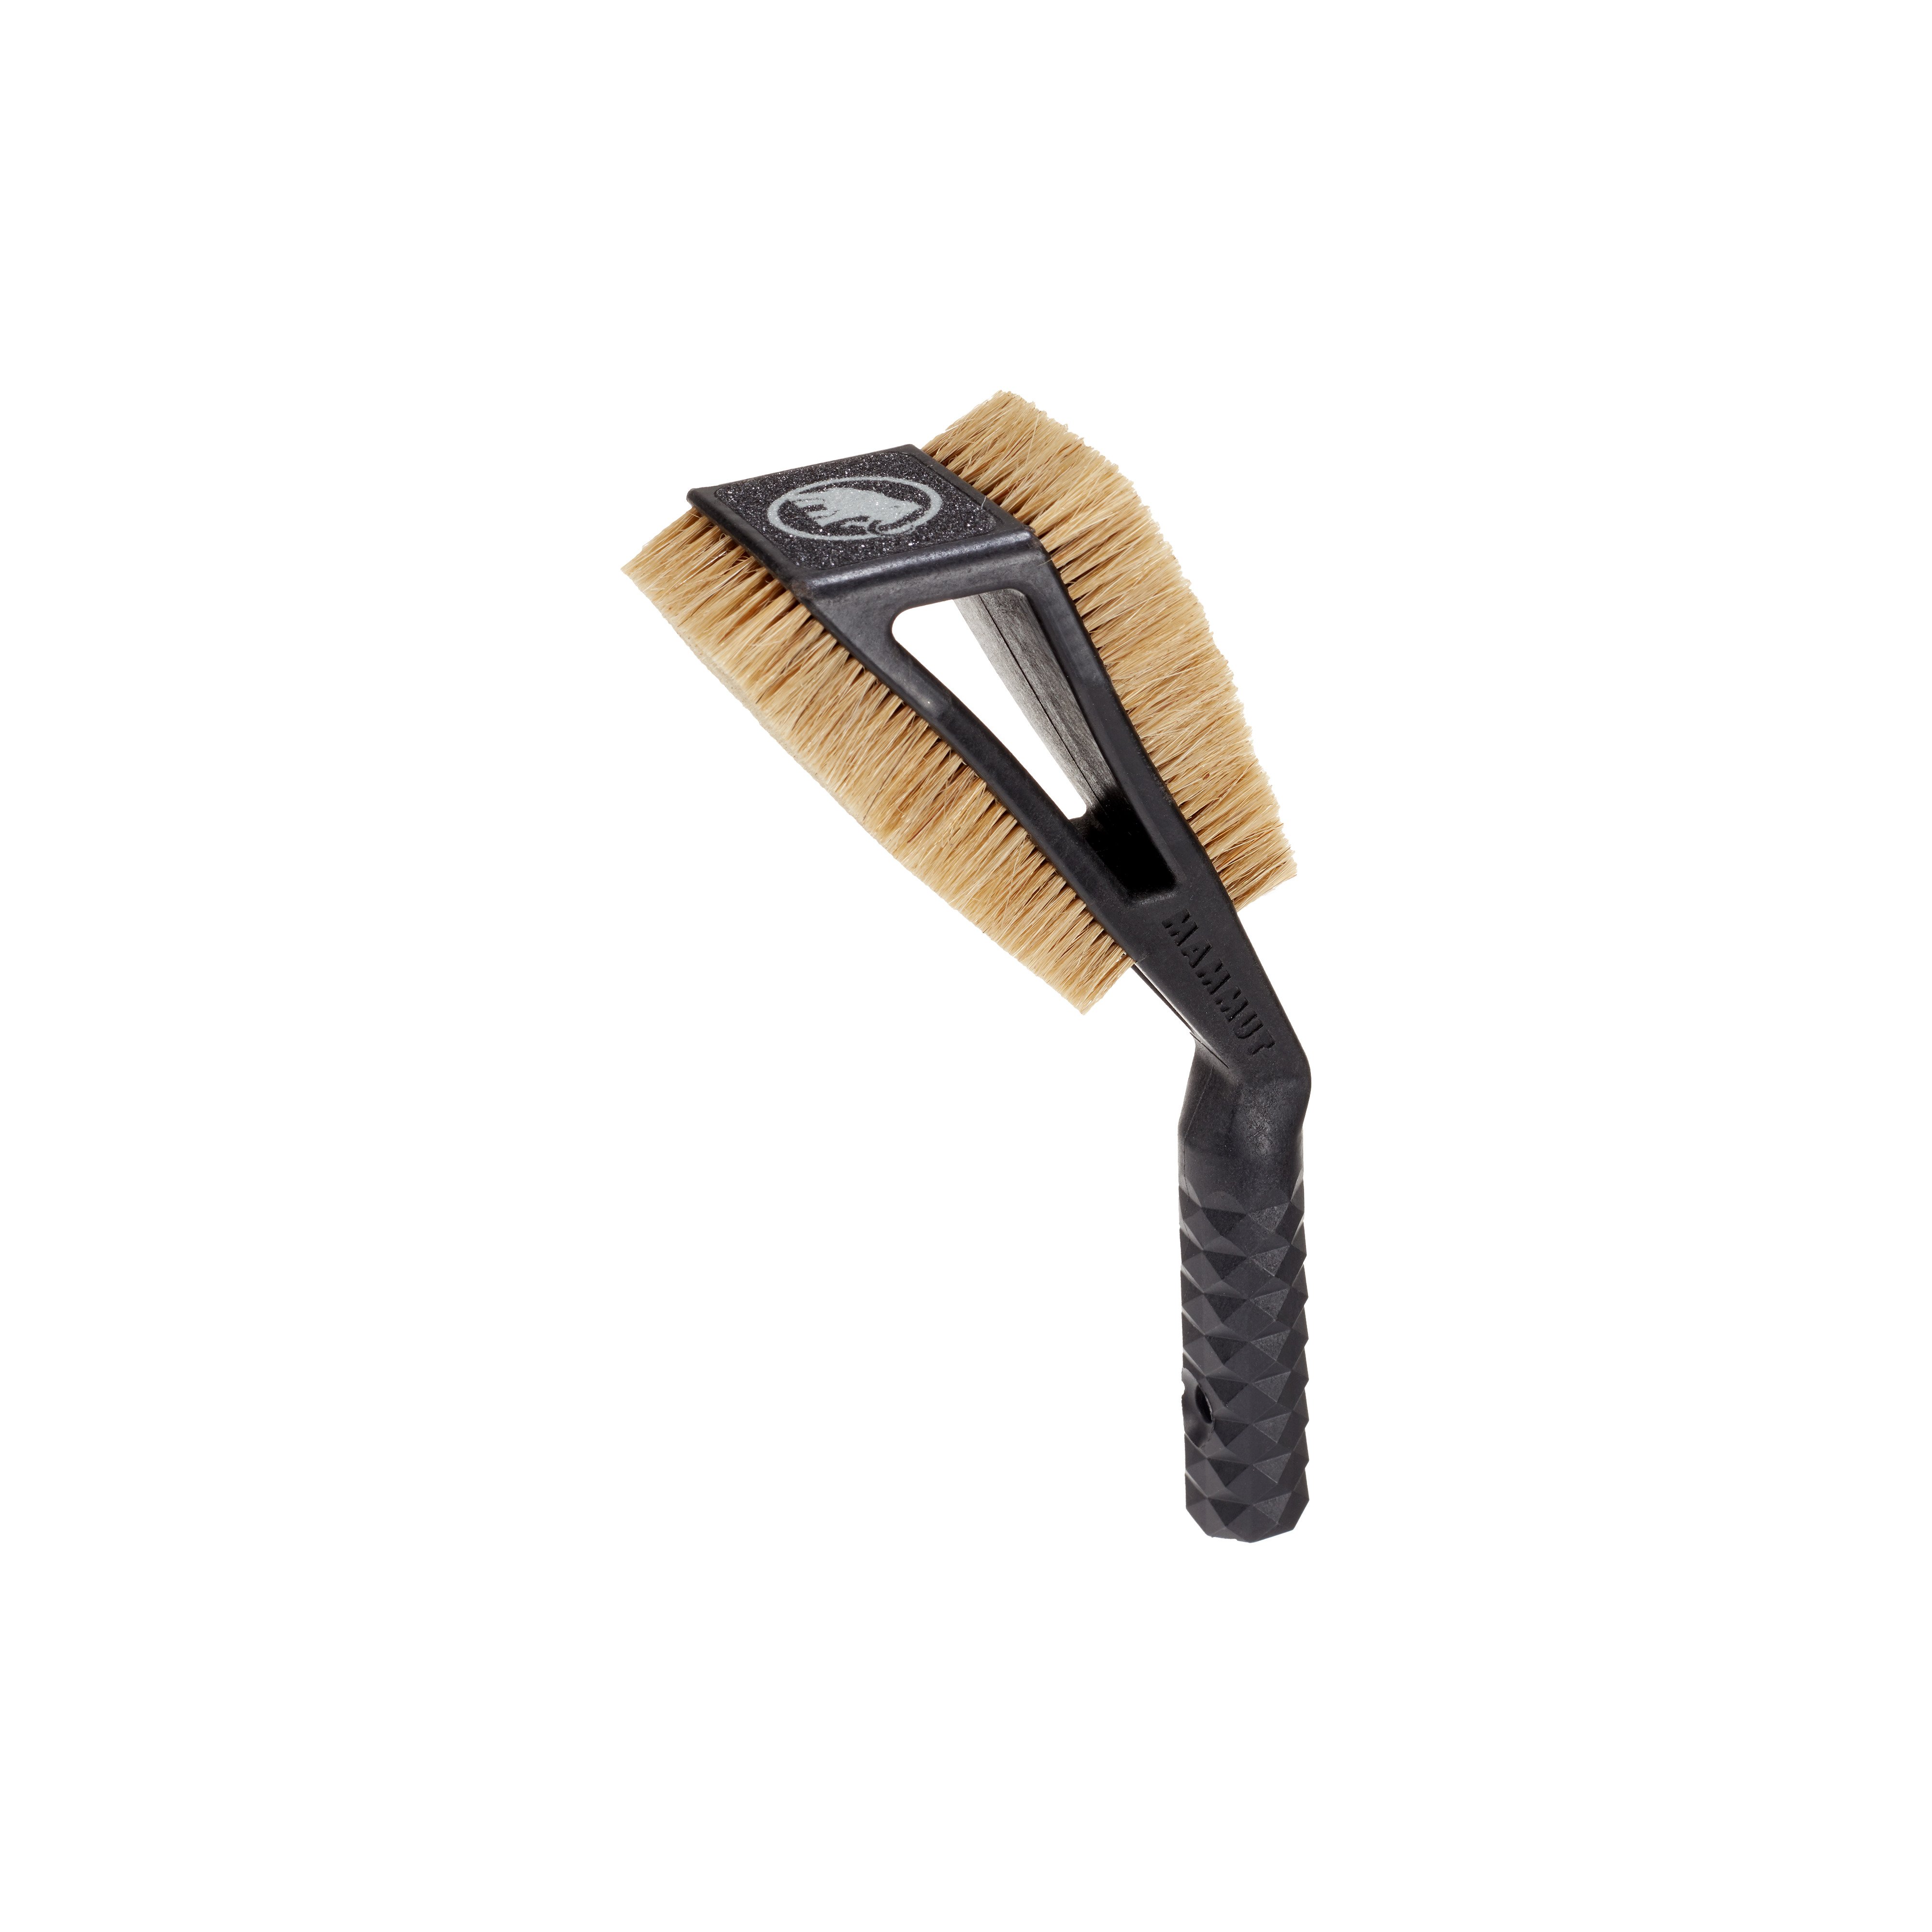 Sloper Brush - black, one size product image